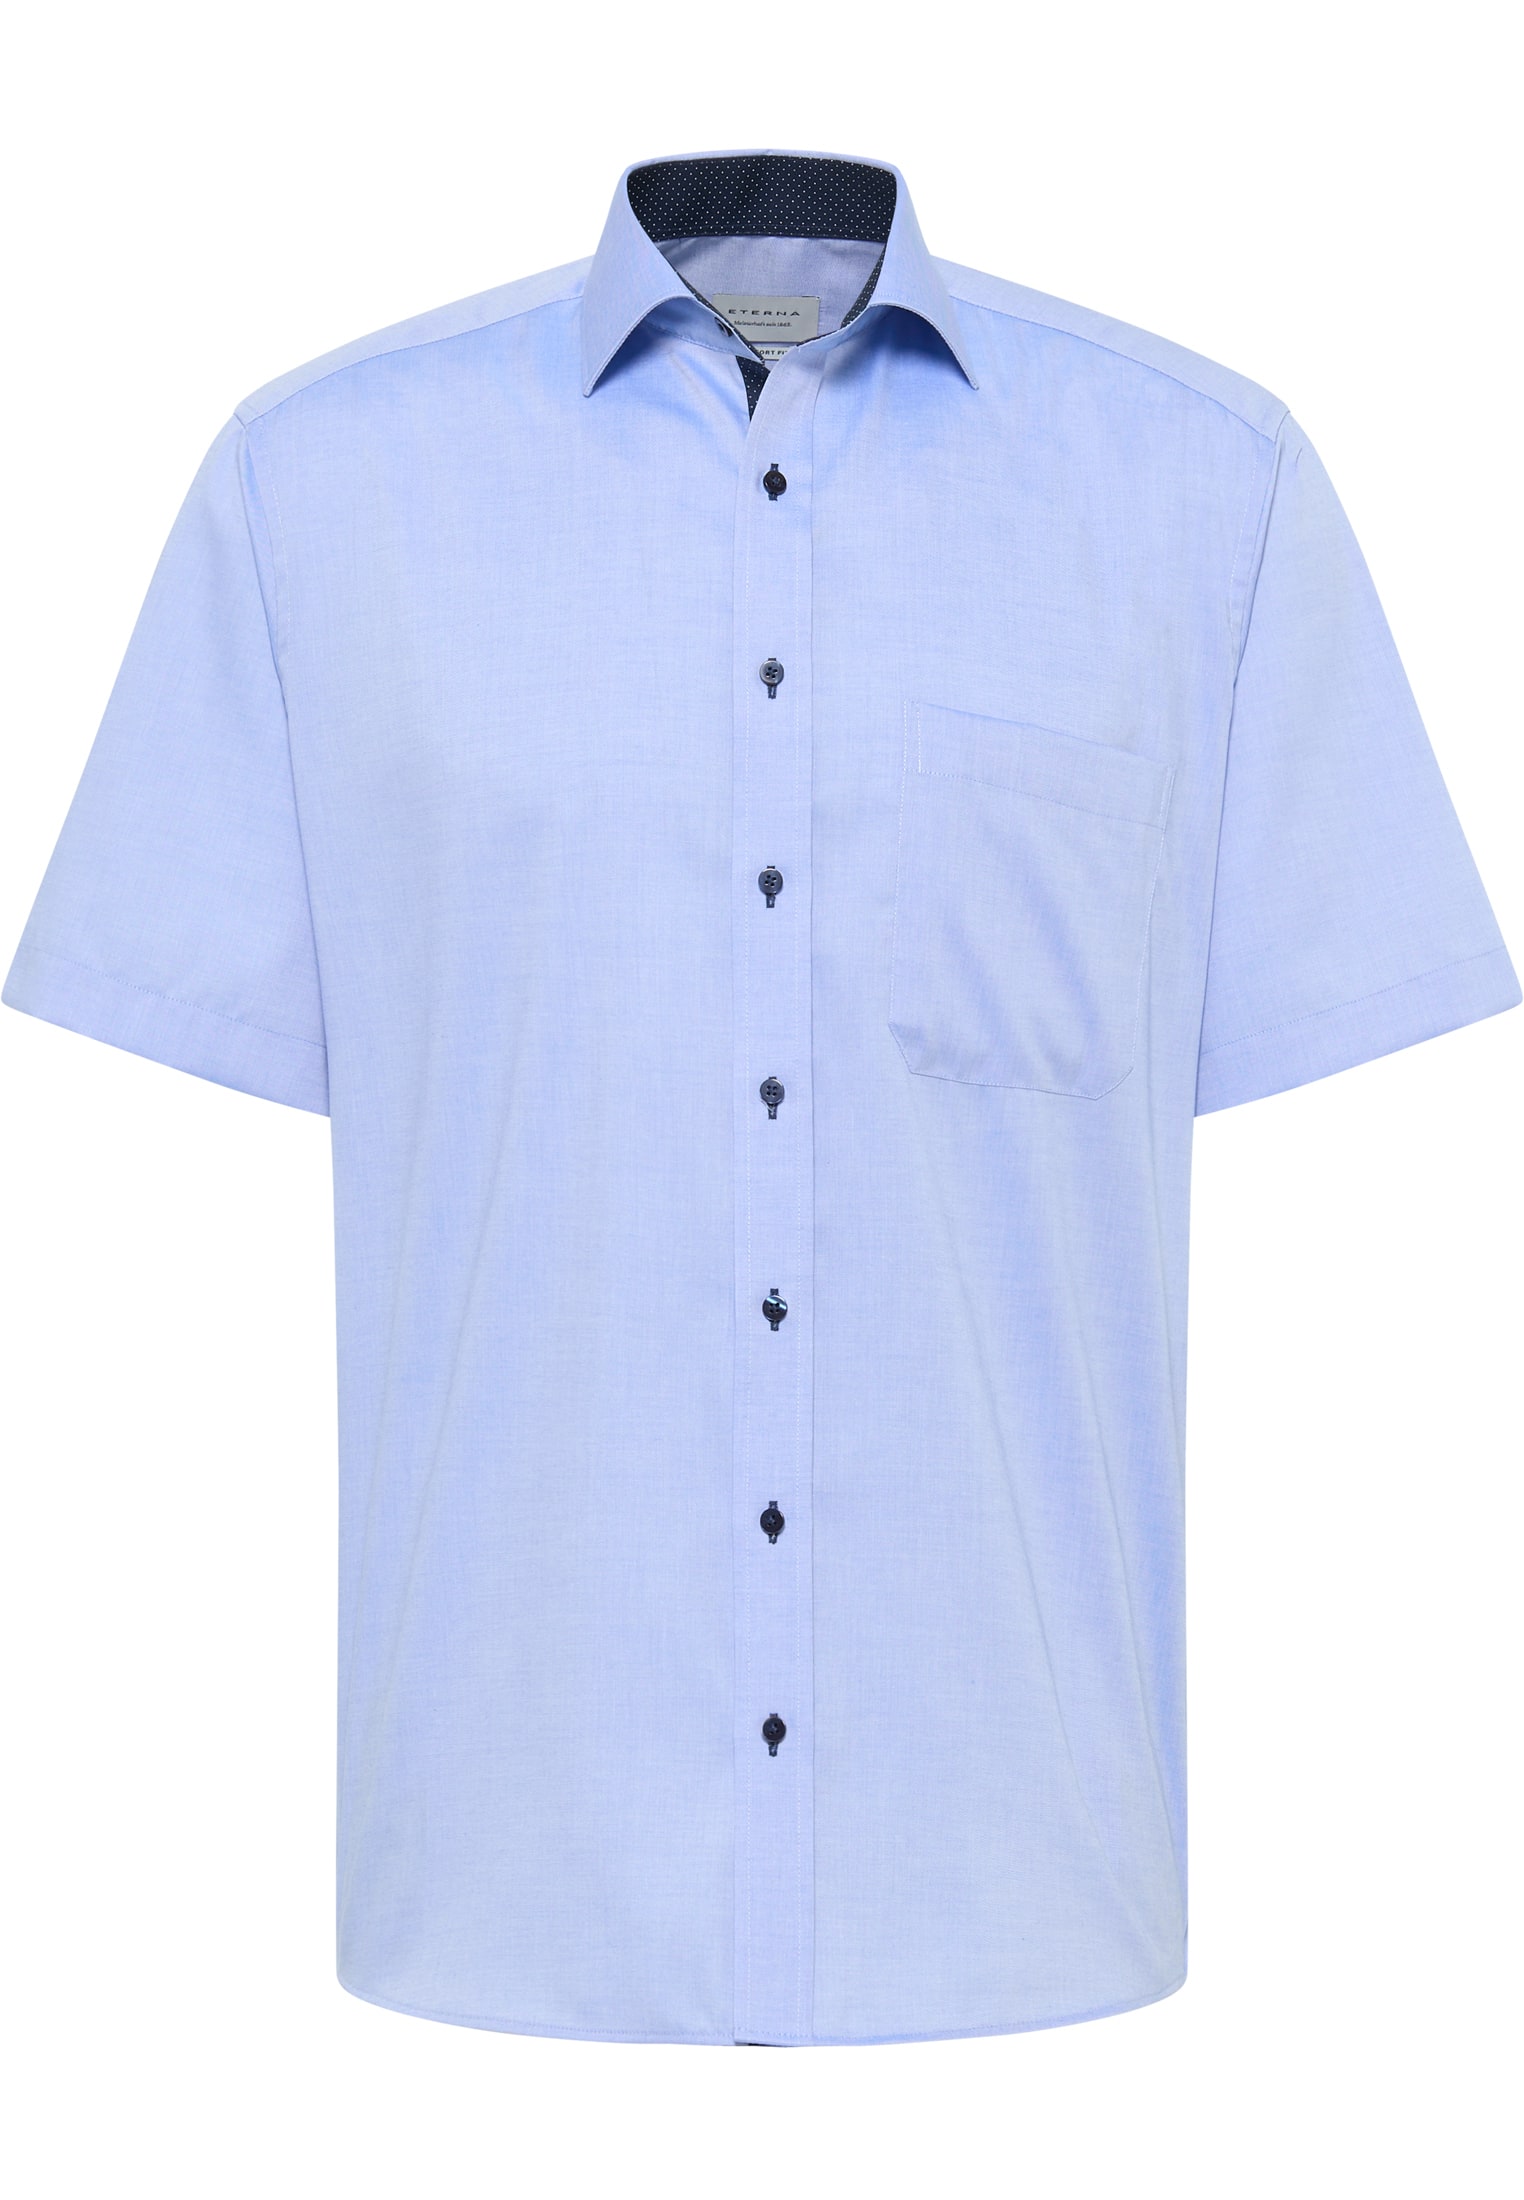 COMFORT FIT Hemd in blau unifarben